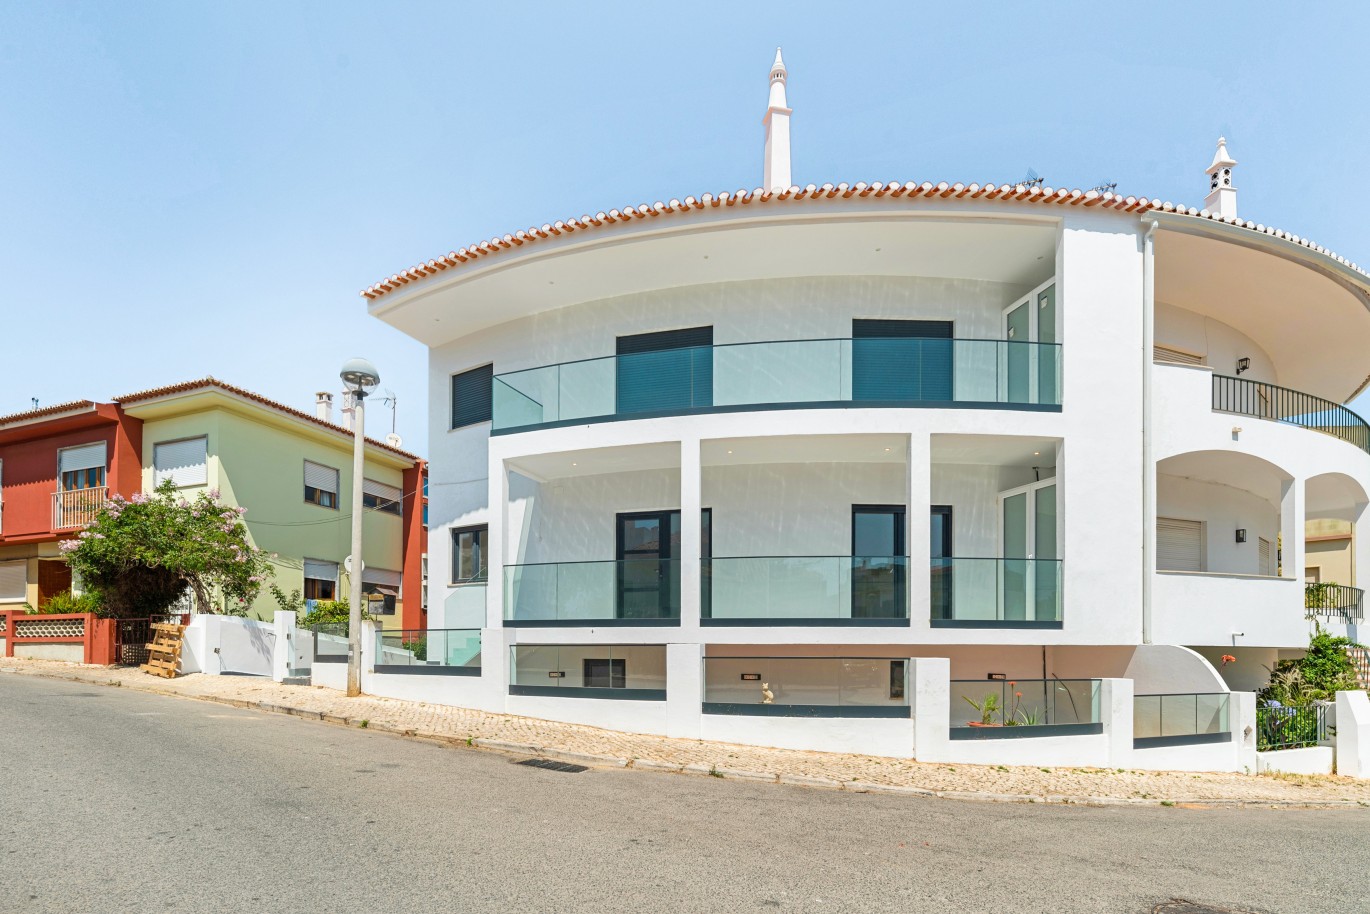 Moradia geminada V6 para venda em Portimão, Algarve_231225